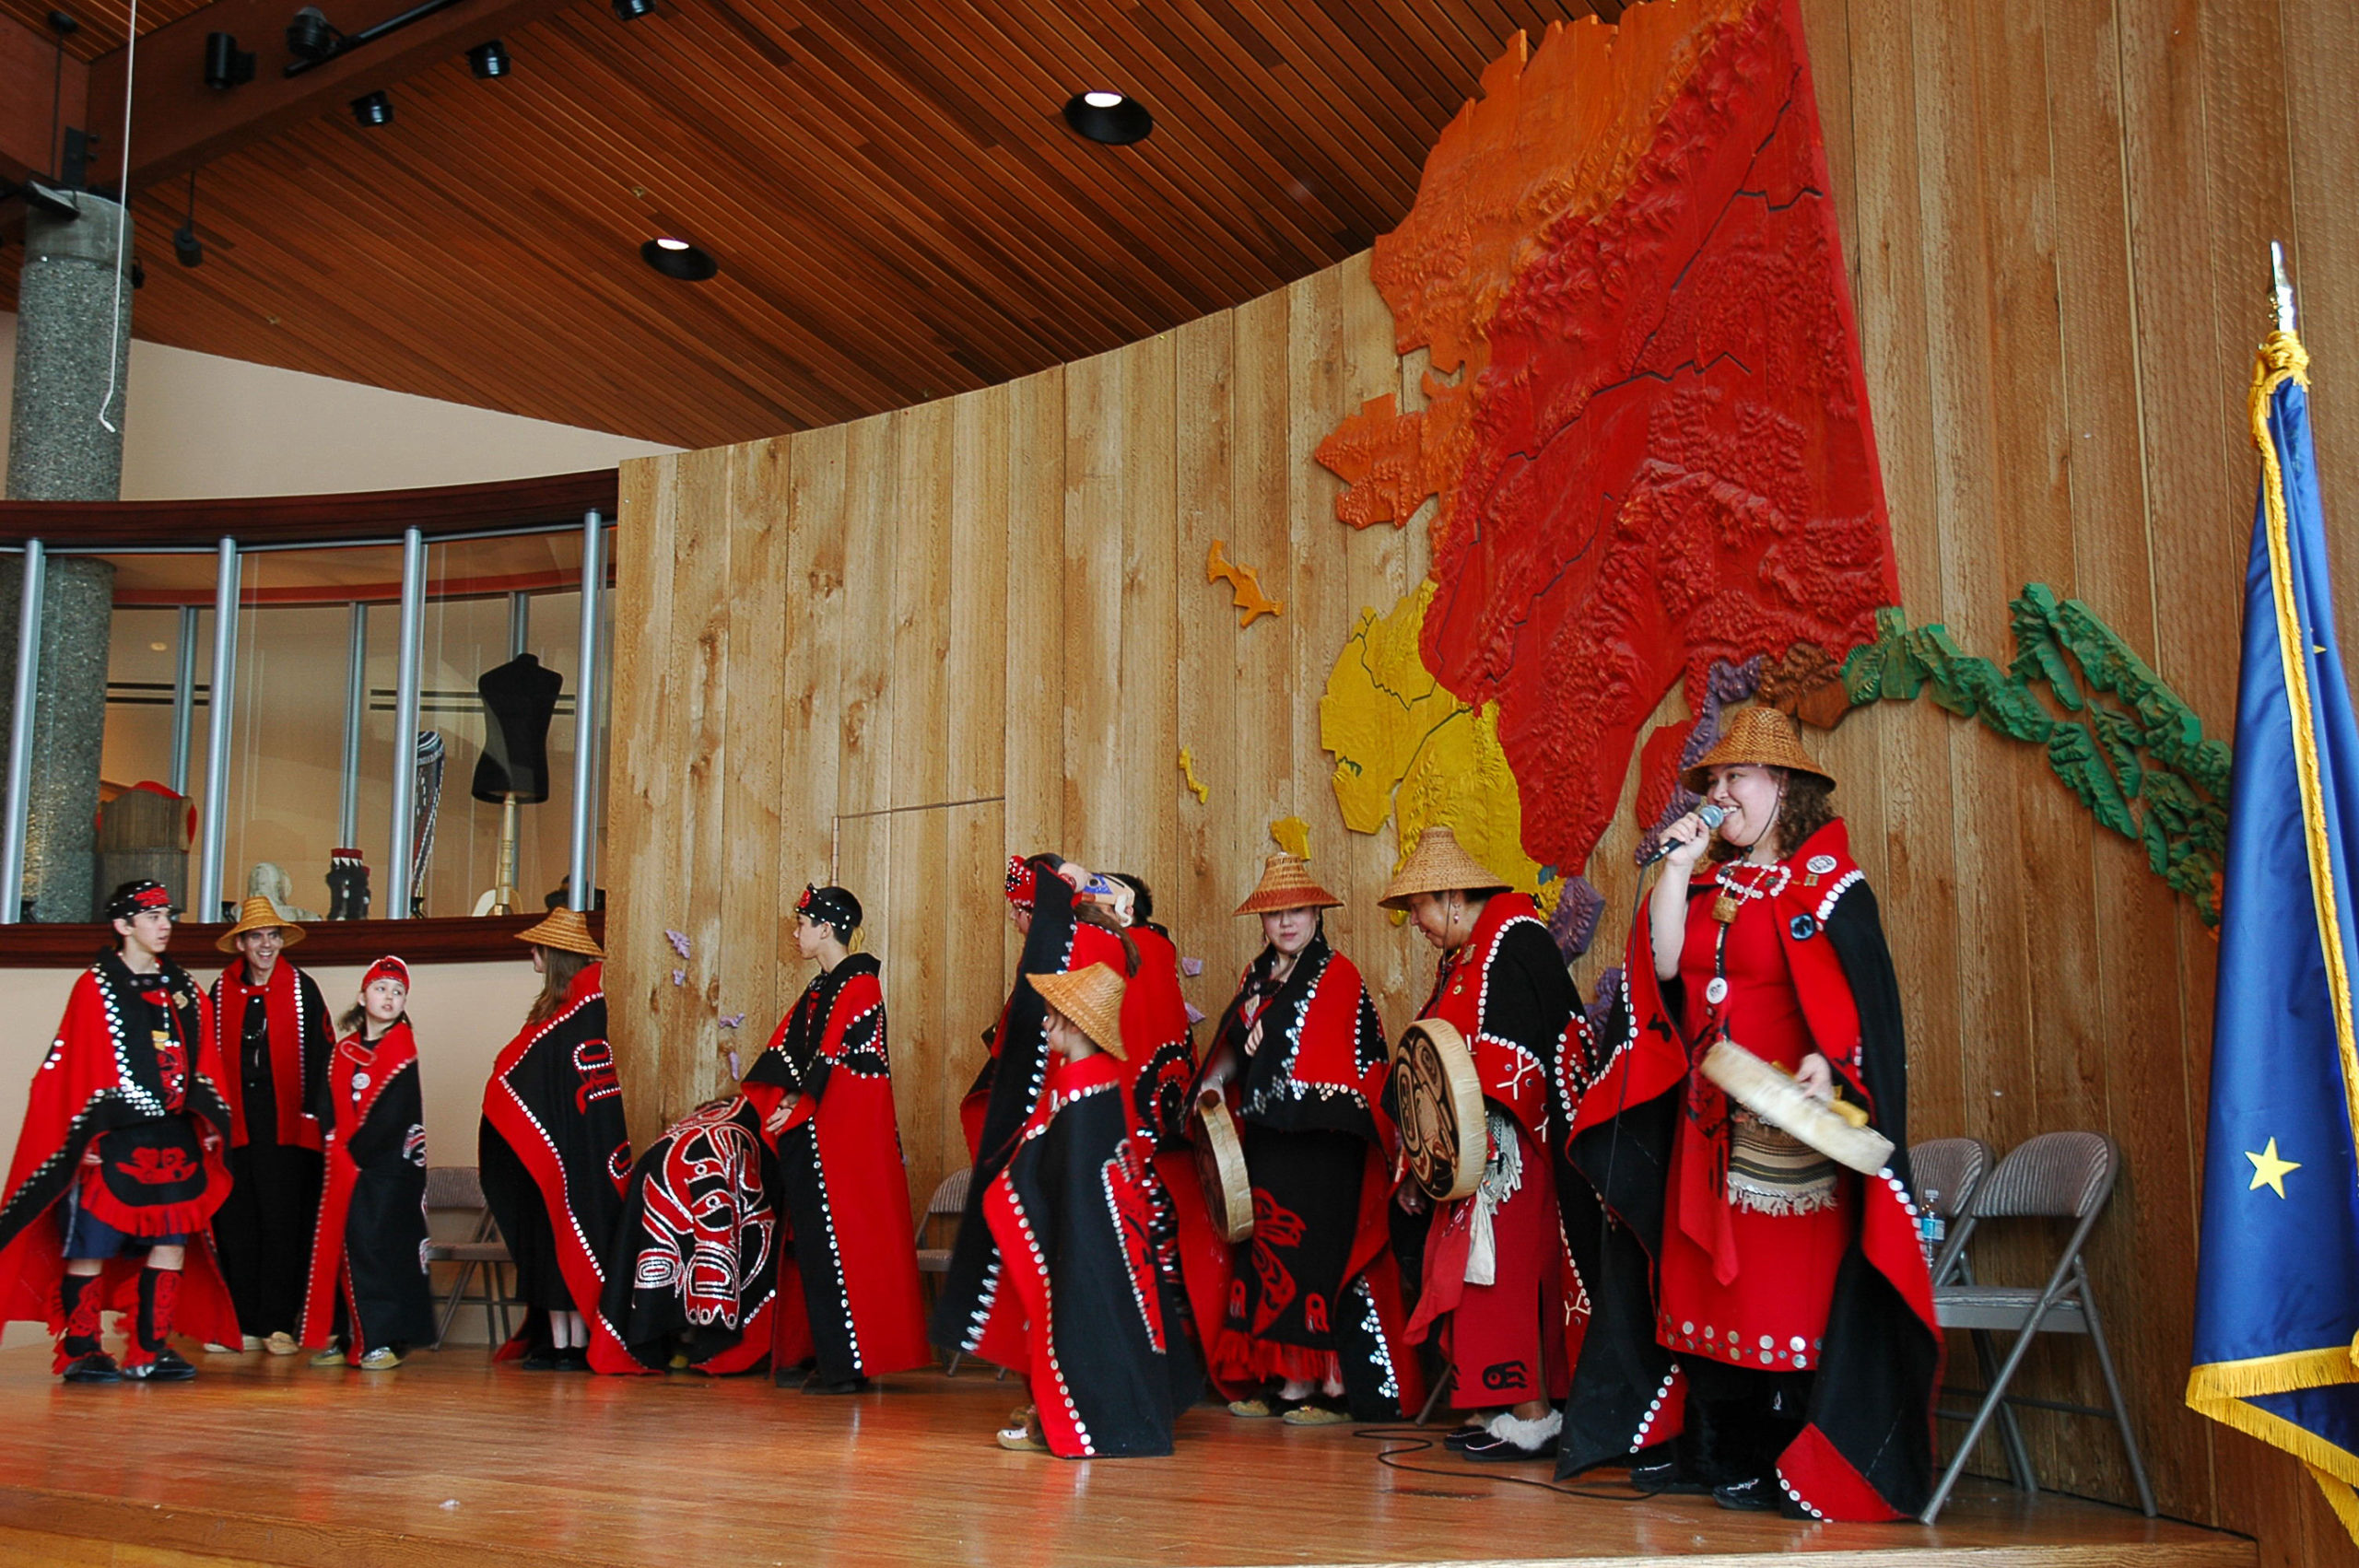 Tlingit dancers in robes at Alaska Native Heritage Center